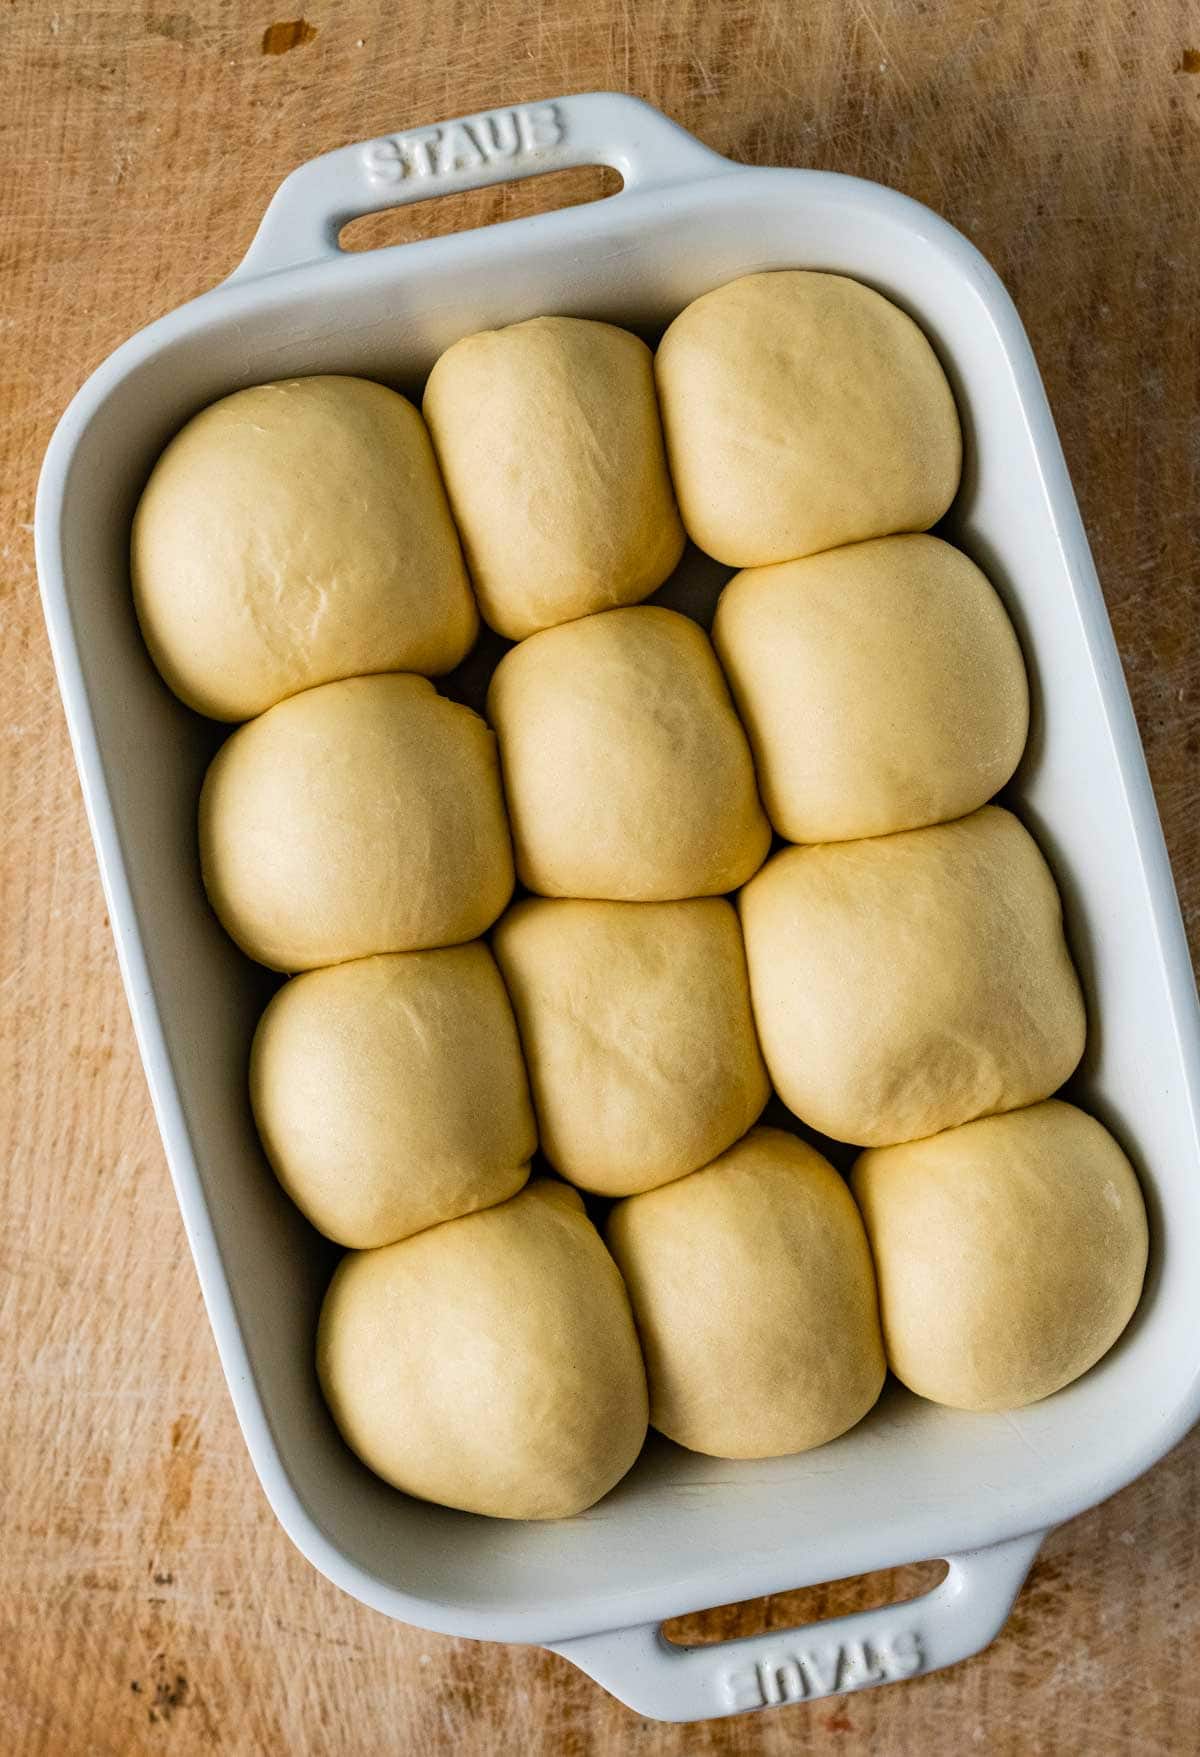 12 risen dough balls in baking pan